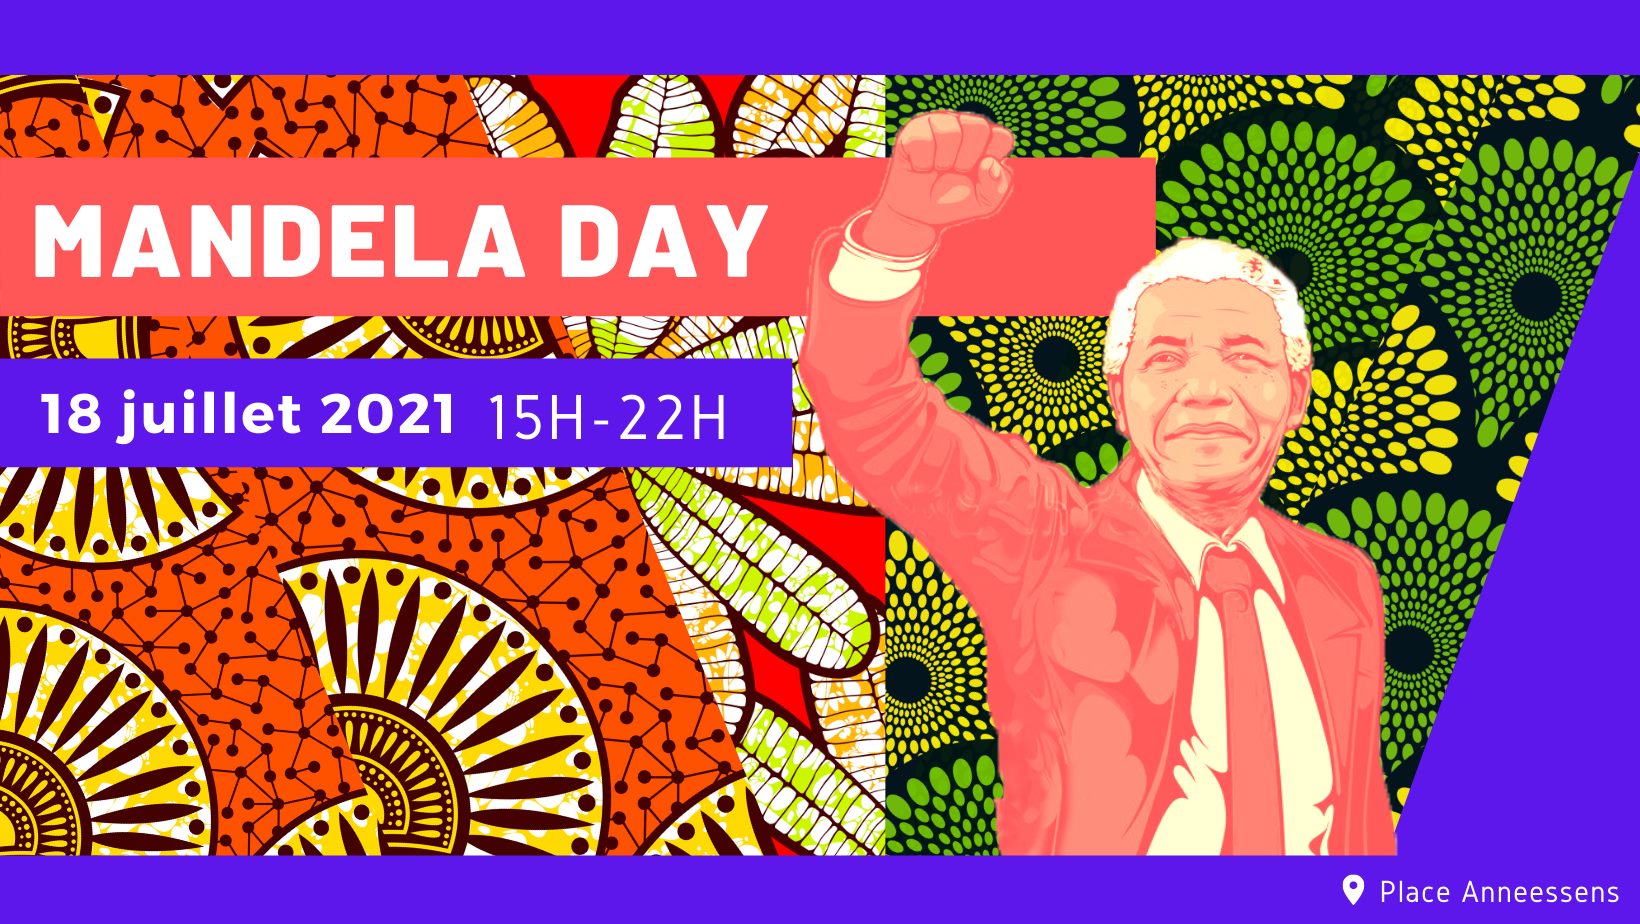 Mandela Day Première édition: Voici les recommandations des Experts/Intervenants